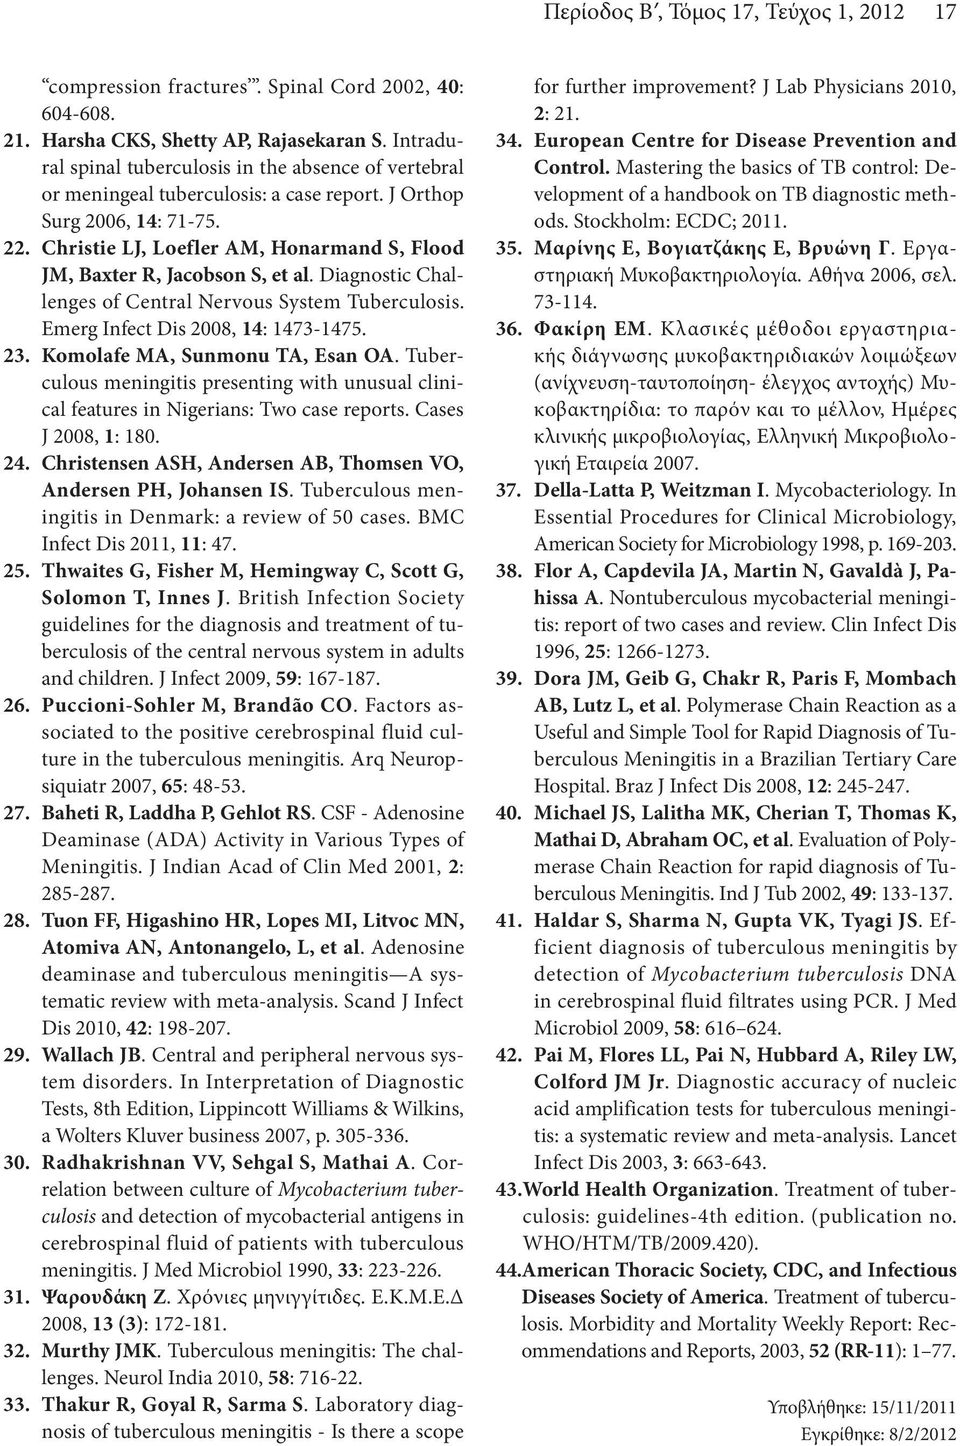 Christie LJ, Loefler AM, Honarmand S, Flood JM, Baxter R, Jacobson S, et al. Diagnostic Challenges of Central Nervous System Tuberculosis. Emerg Infect Dis 2008, 14: 1473-1475. 23.